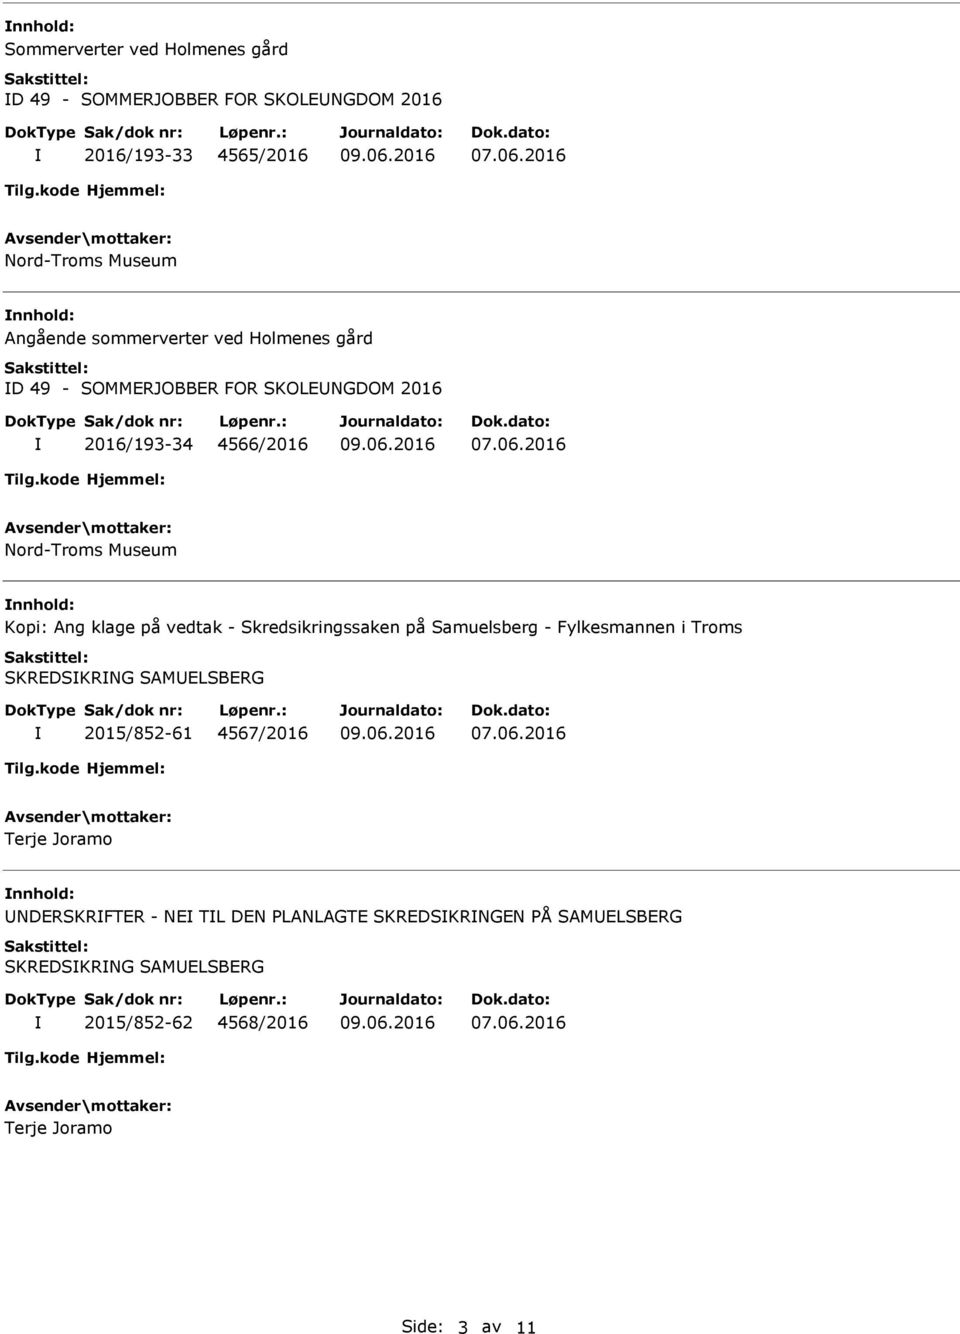 Kopi: Ang klage på vedtak - Skredsikringssaken på Samuelsberg - Fylkesmannen i Troms SKRDSKRNG SAMLSBRG 2015/852-61 4567/2016